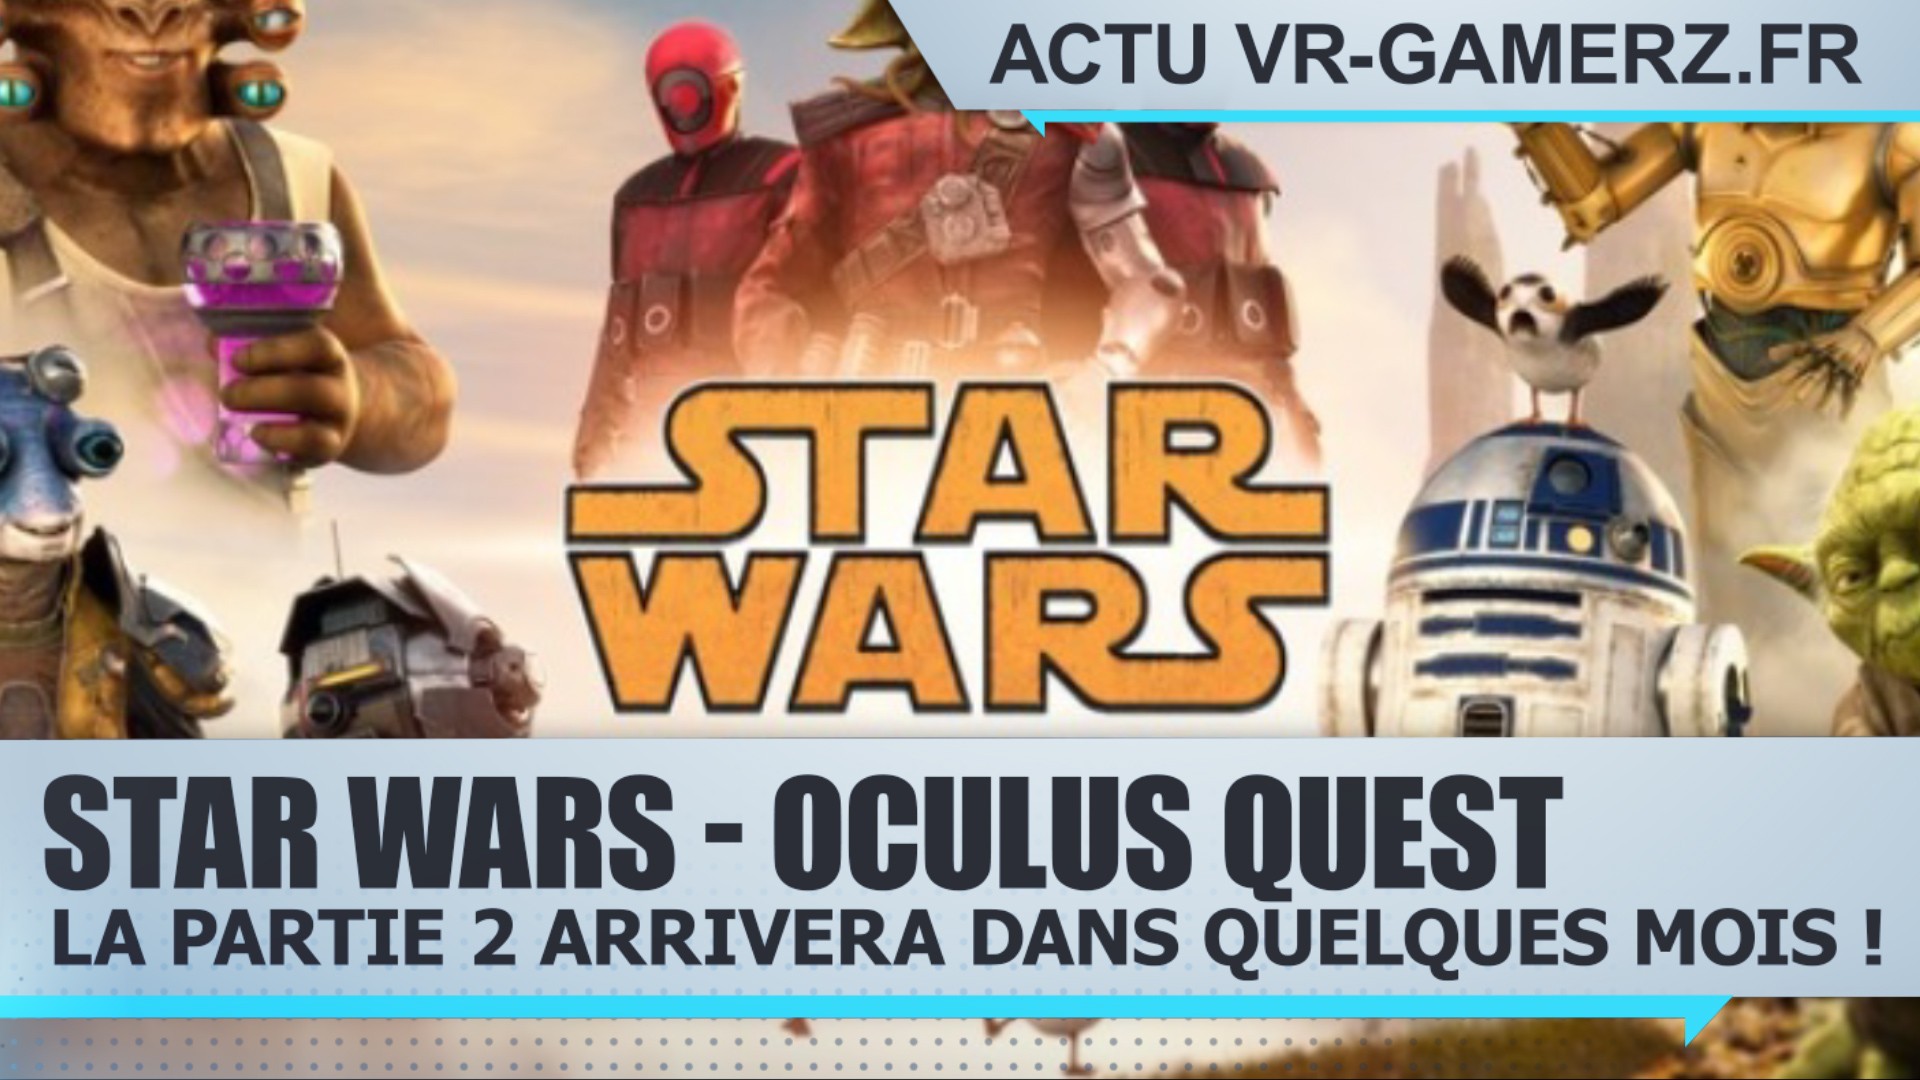 Star Wars sur Oculus quest : La partie 2 arrivera dans quelques mois !